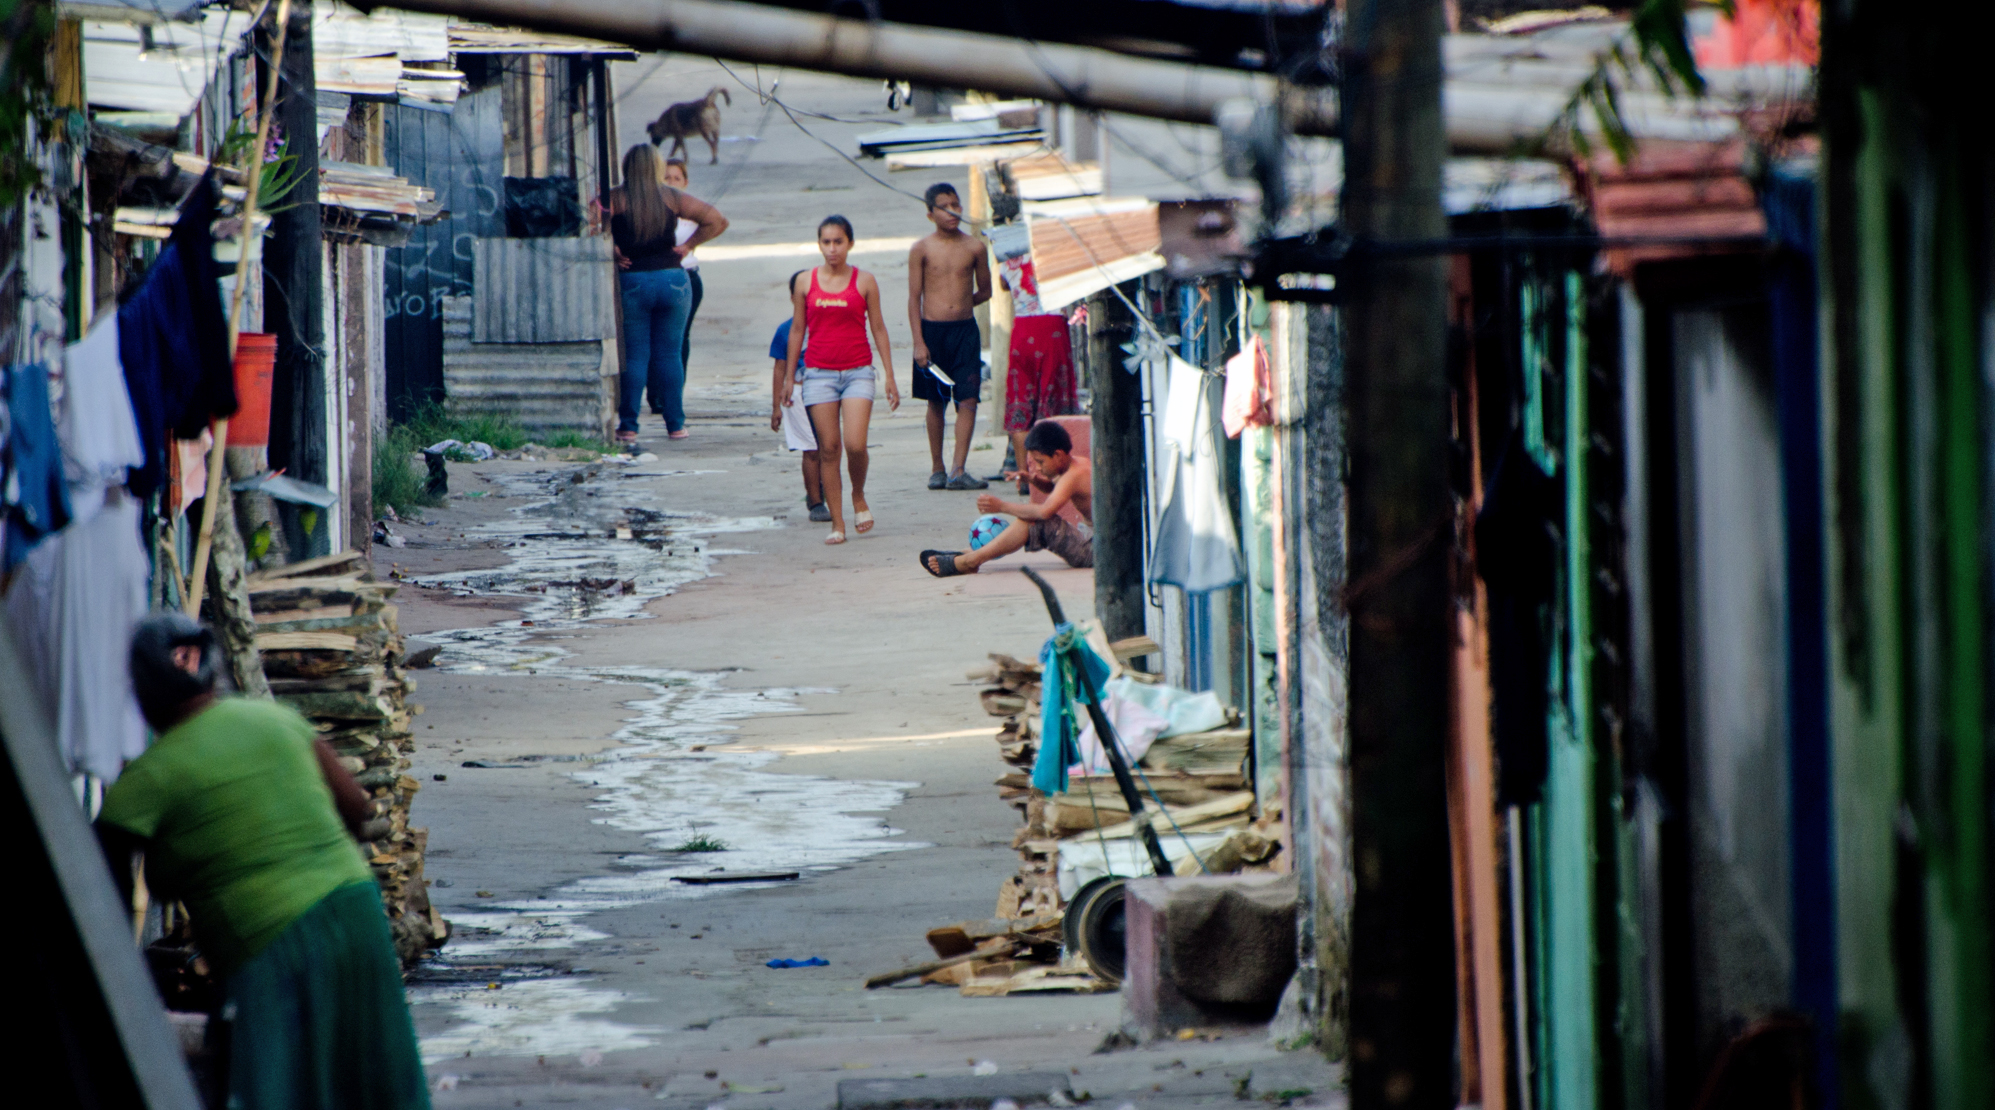 Die Lebensumstände in Zentralamerika sind schwierig: Vielfach ist der Alltag geprägt von Armut, Bandenkriegen und Menschenhandel.